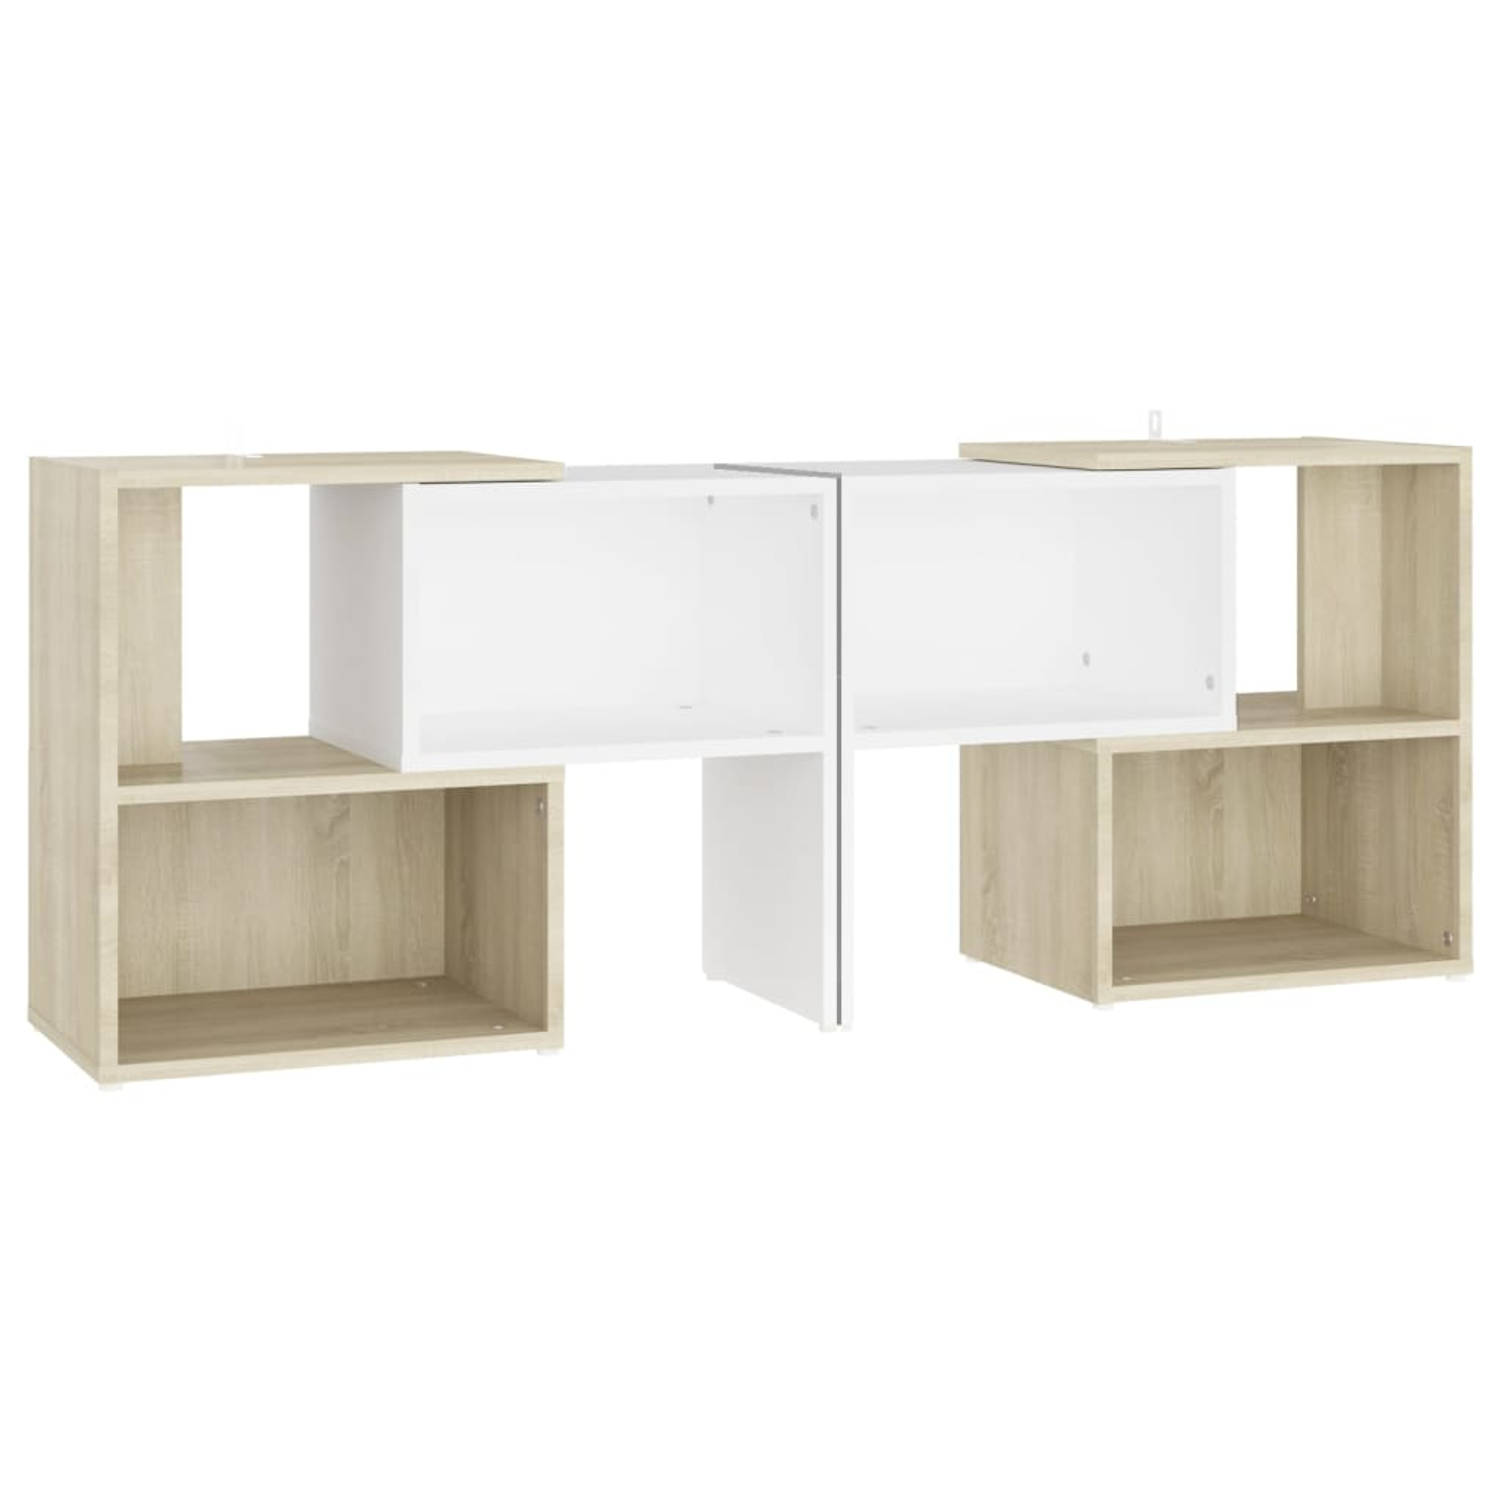 The Living Store TV-meubel - Modulair ontwerp - Geordend opbergen - Wit/sonoma eiken - 104x30x52 cm - Montage vereist